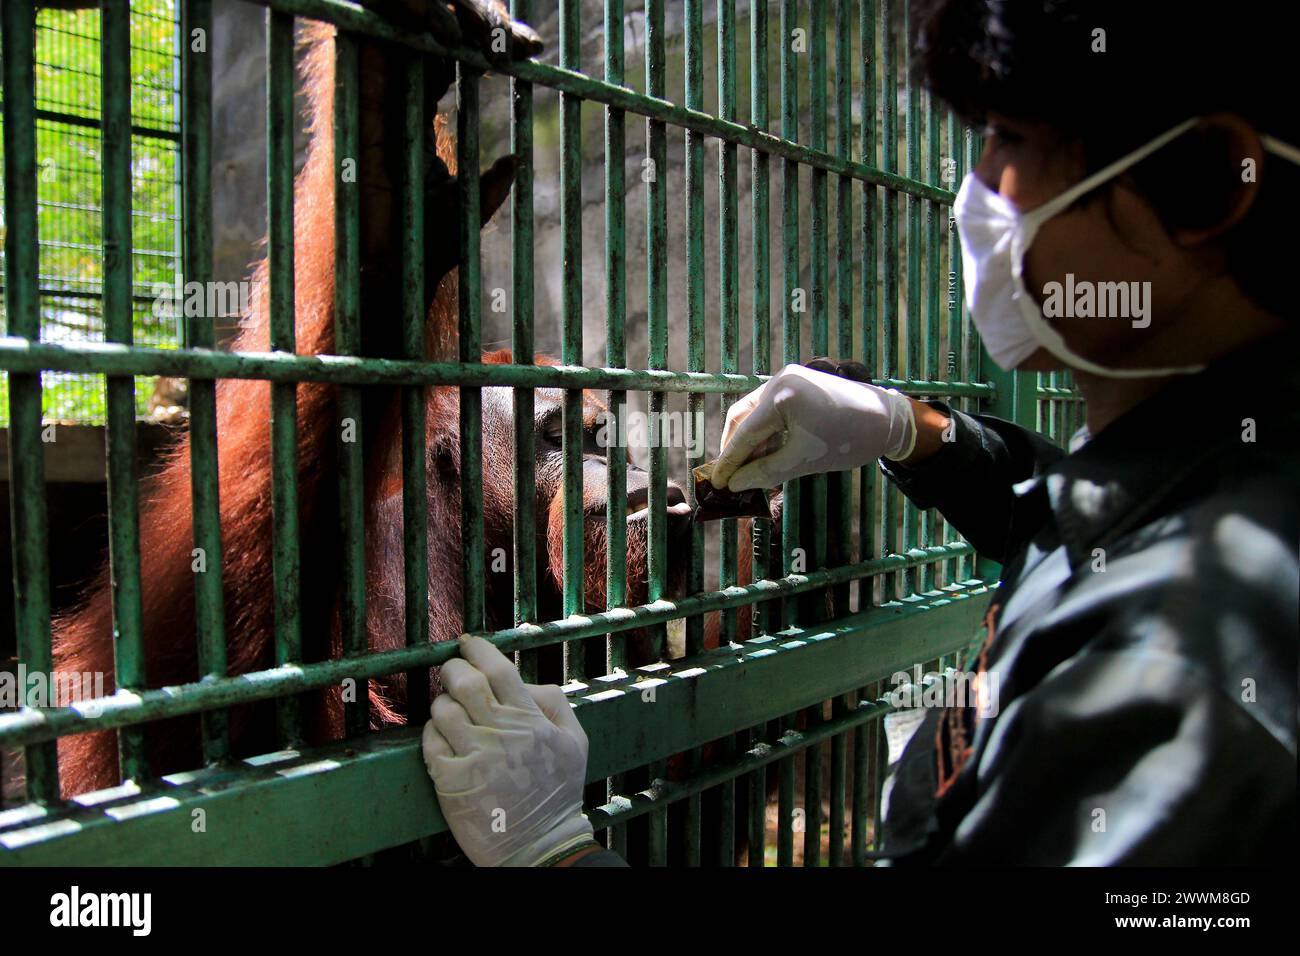 Erwachsene Bornean Orang-Utans (Pongo pygmaeus) sehen glücklich aus, wenn Tierpfleger im Wildlife Rescue Center Vitamine in Plastiktüten geben. Stockfoto